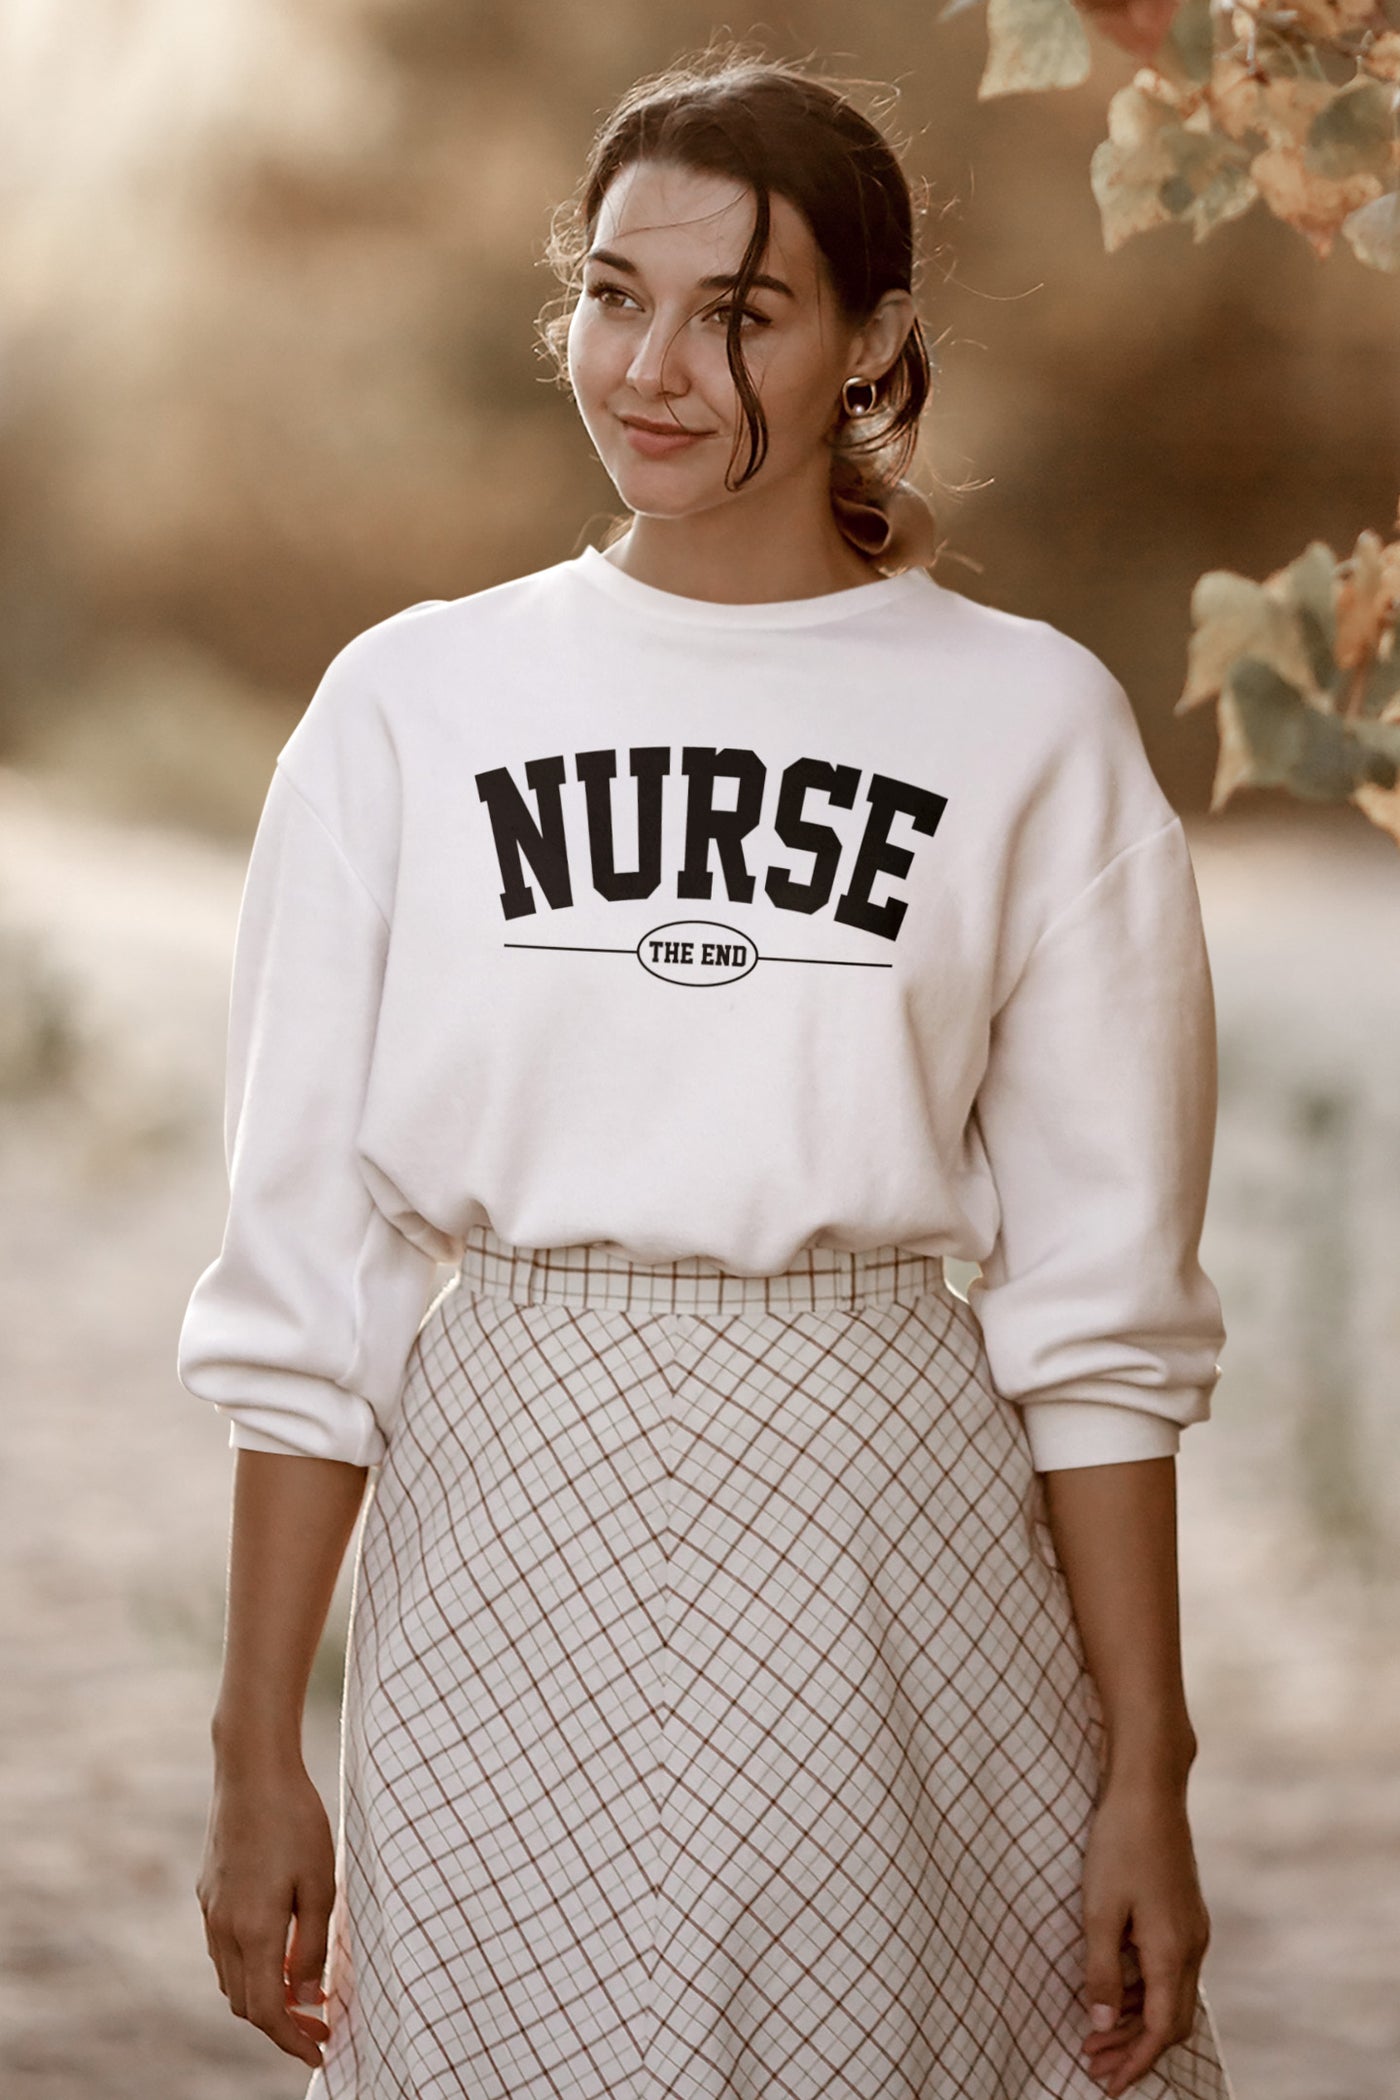 Nurse "The End" Crewneck Sweatshirt